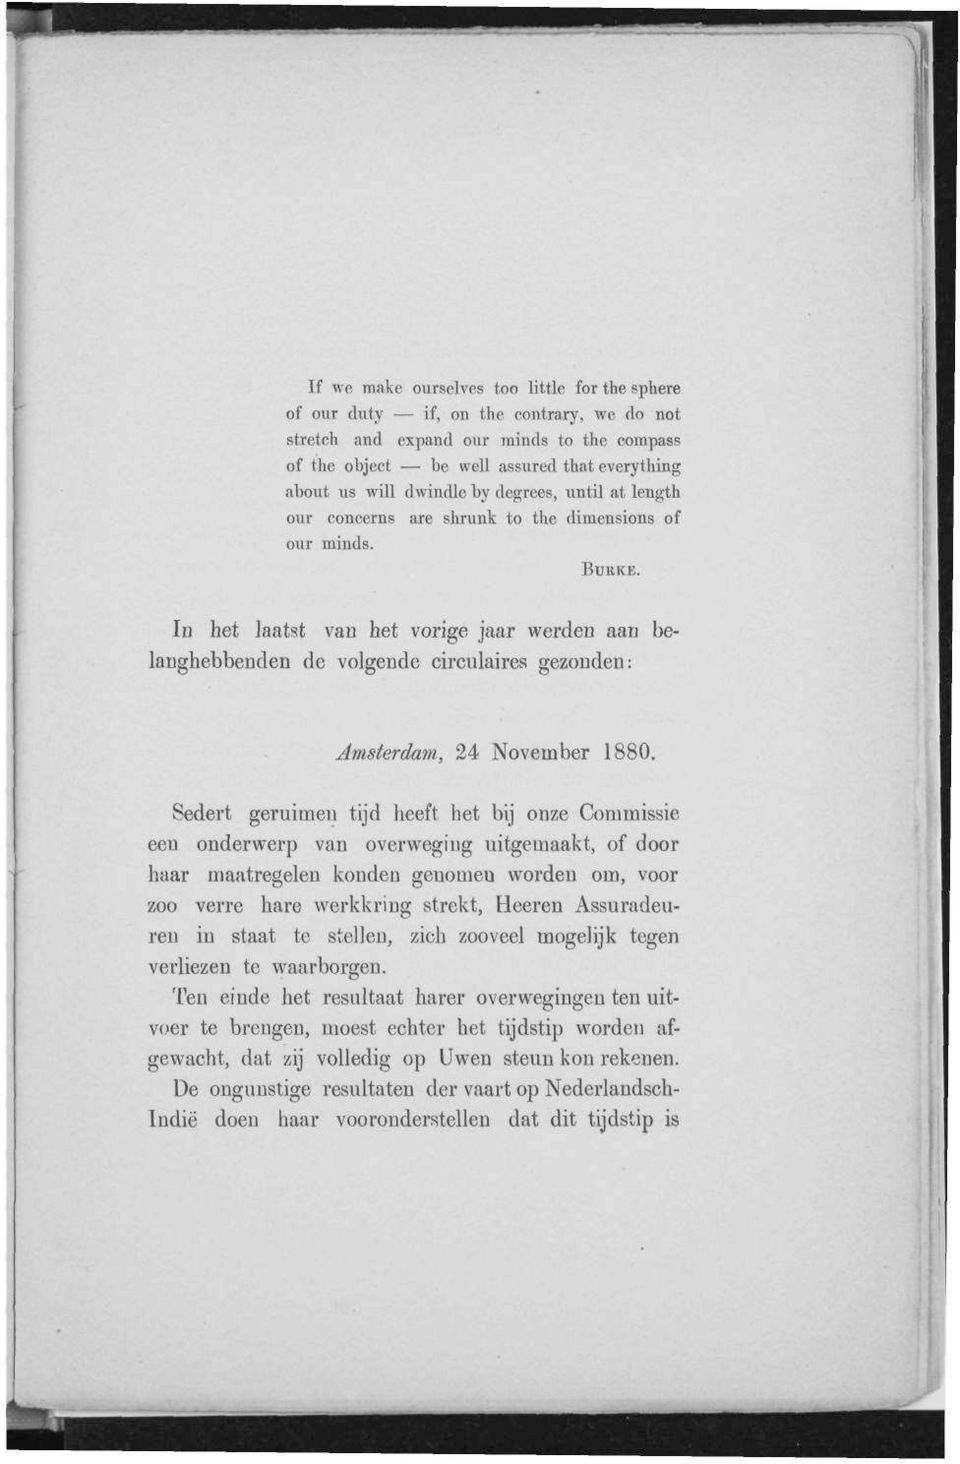 In het laatst van het vorige jaar werden aan belanghebbenden de volgende circulaires gezonden: Amsterdam, 24 November 1880.